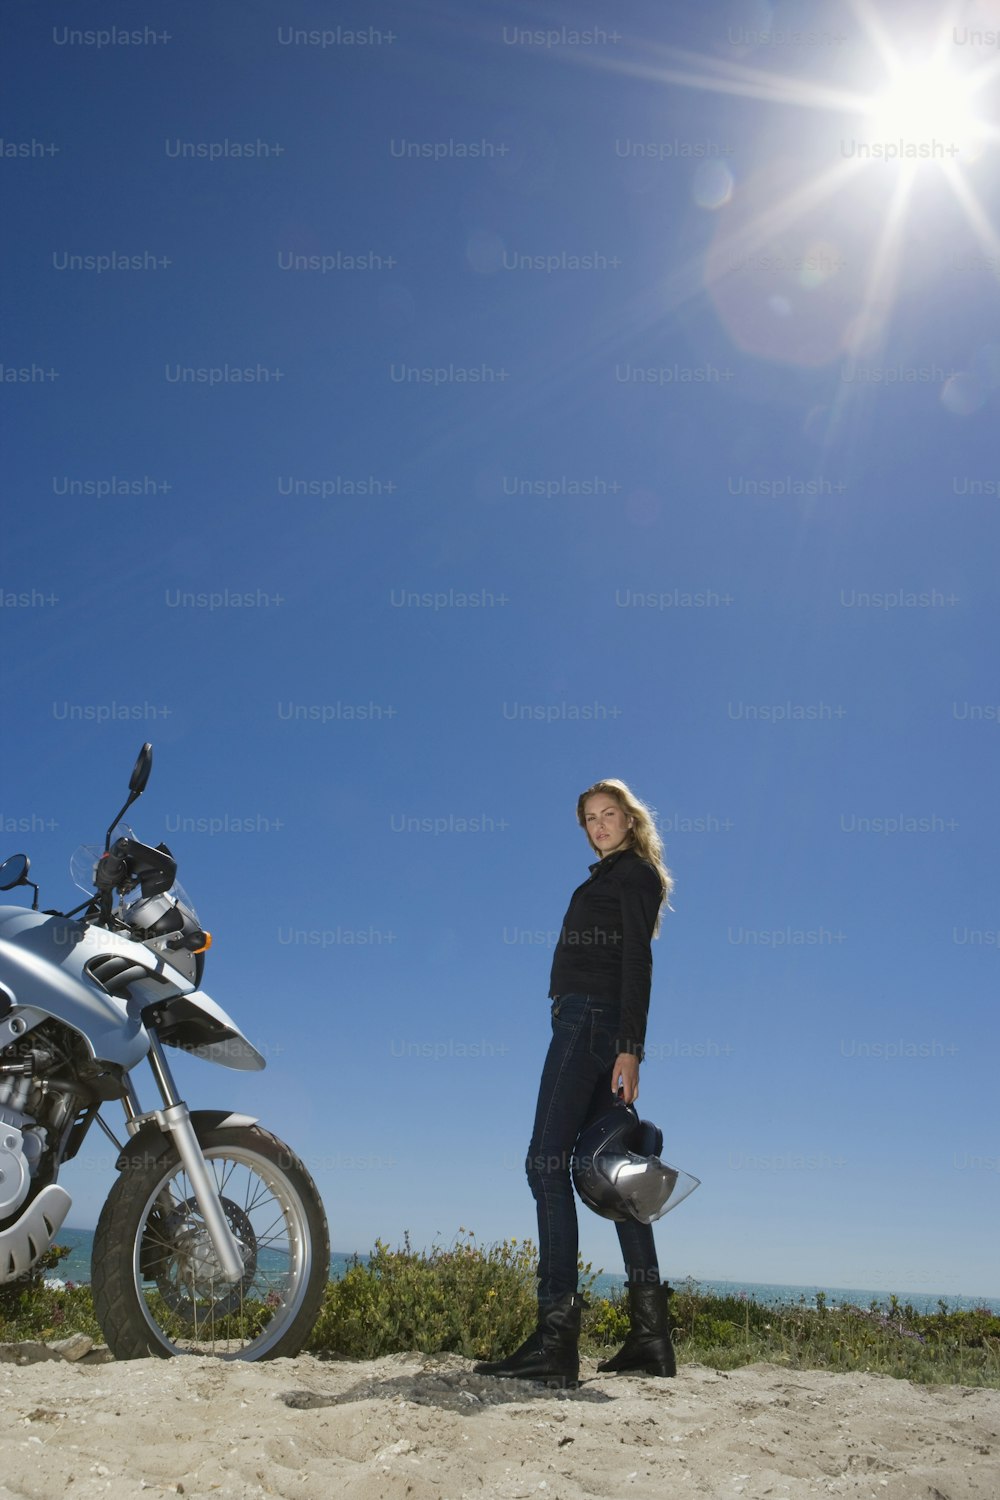 해변에서 오토바이 옆에 서 있는 여자